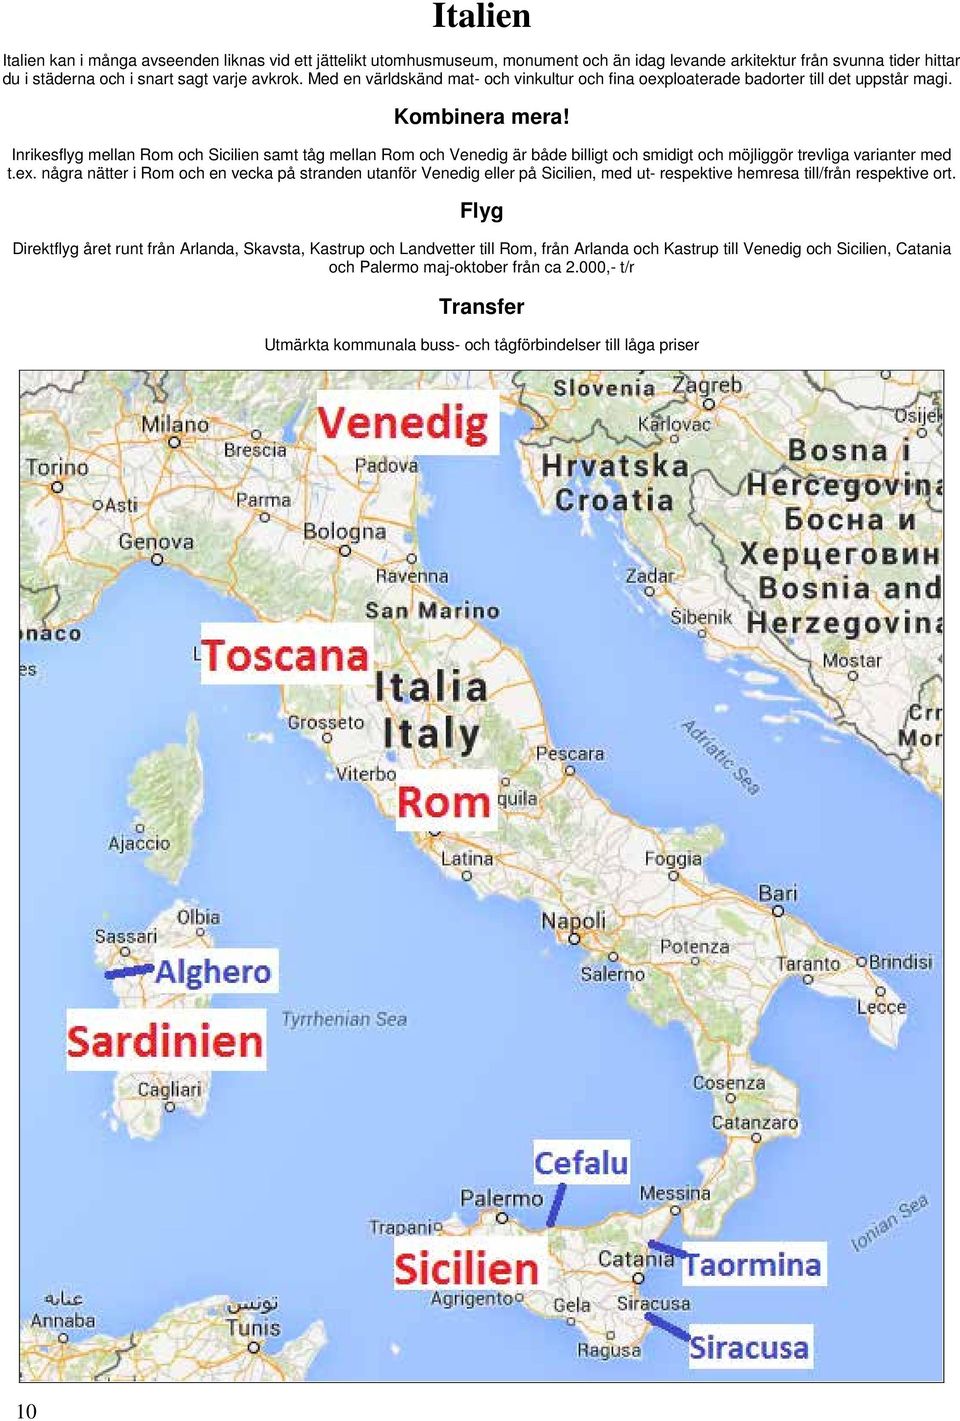 Inrikesflyg mellan Rom och Sicilien samt tåg mellan Rom och Venedig är både billigt och smidigt och möjliggör trevliga varianter med t.ex.